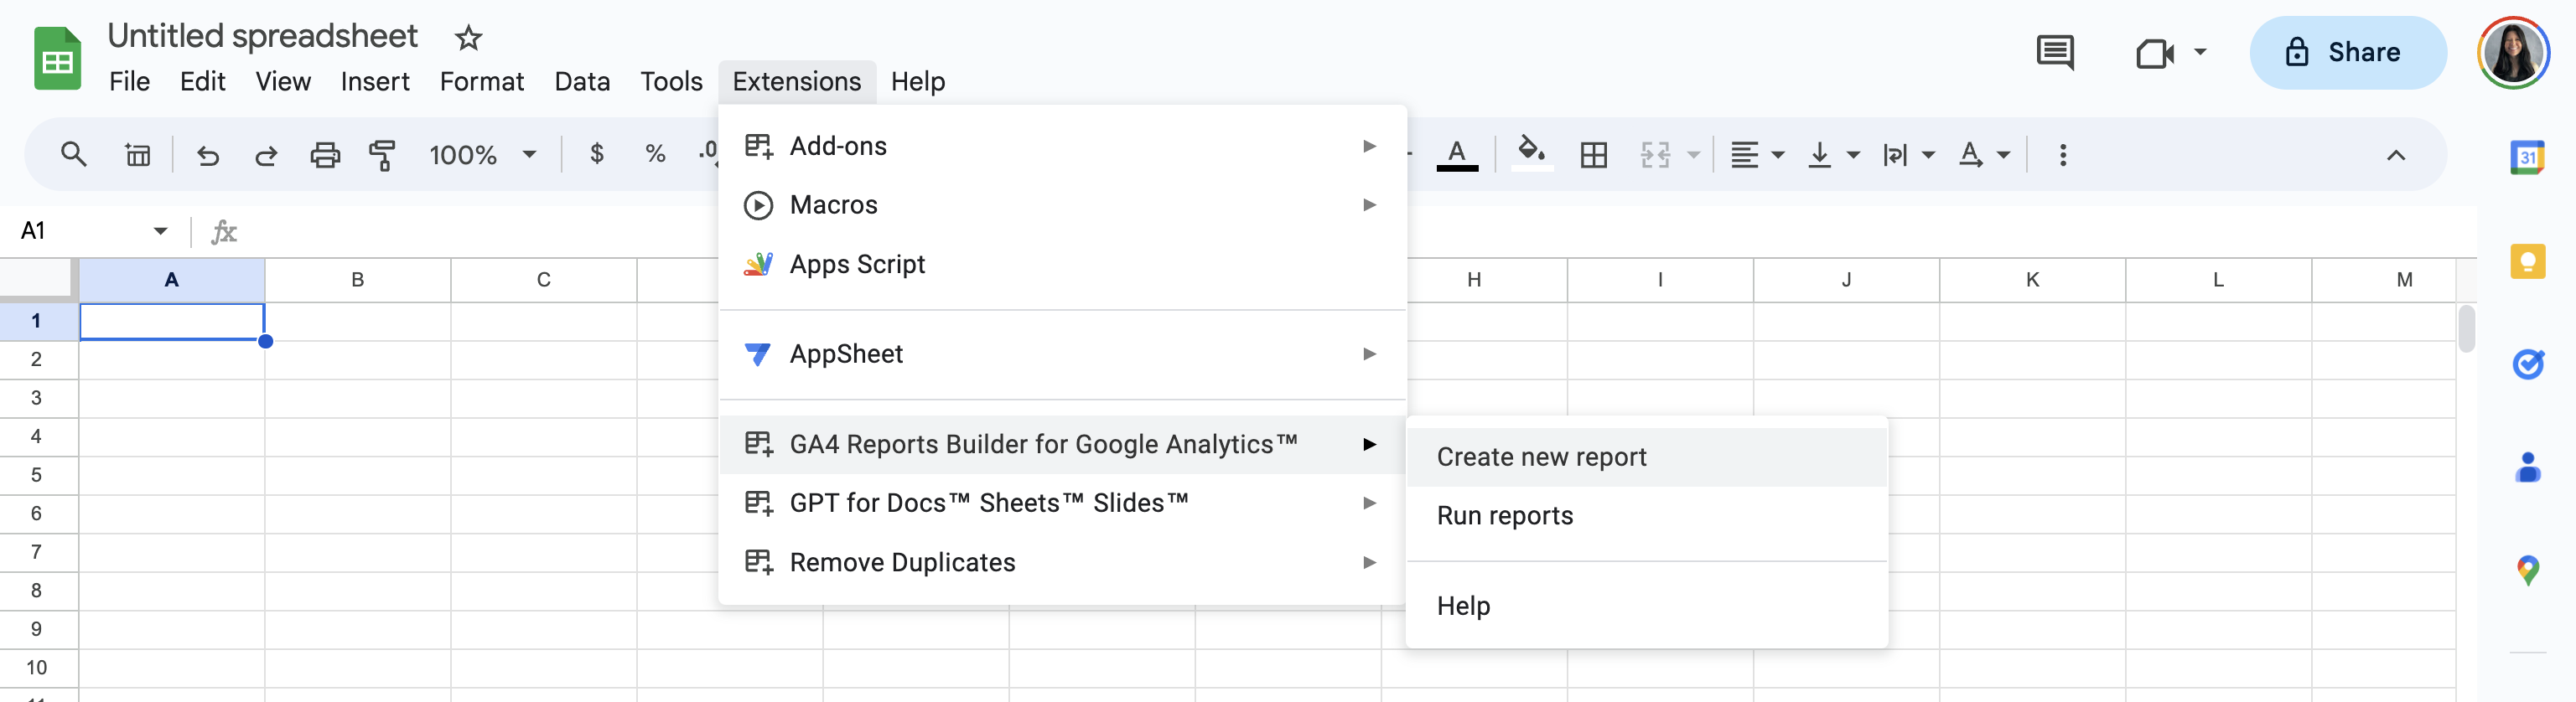 Generador de informes de GA4 para la extensión de Google Analytics disponible